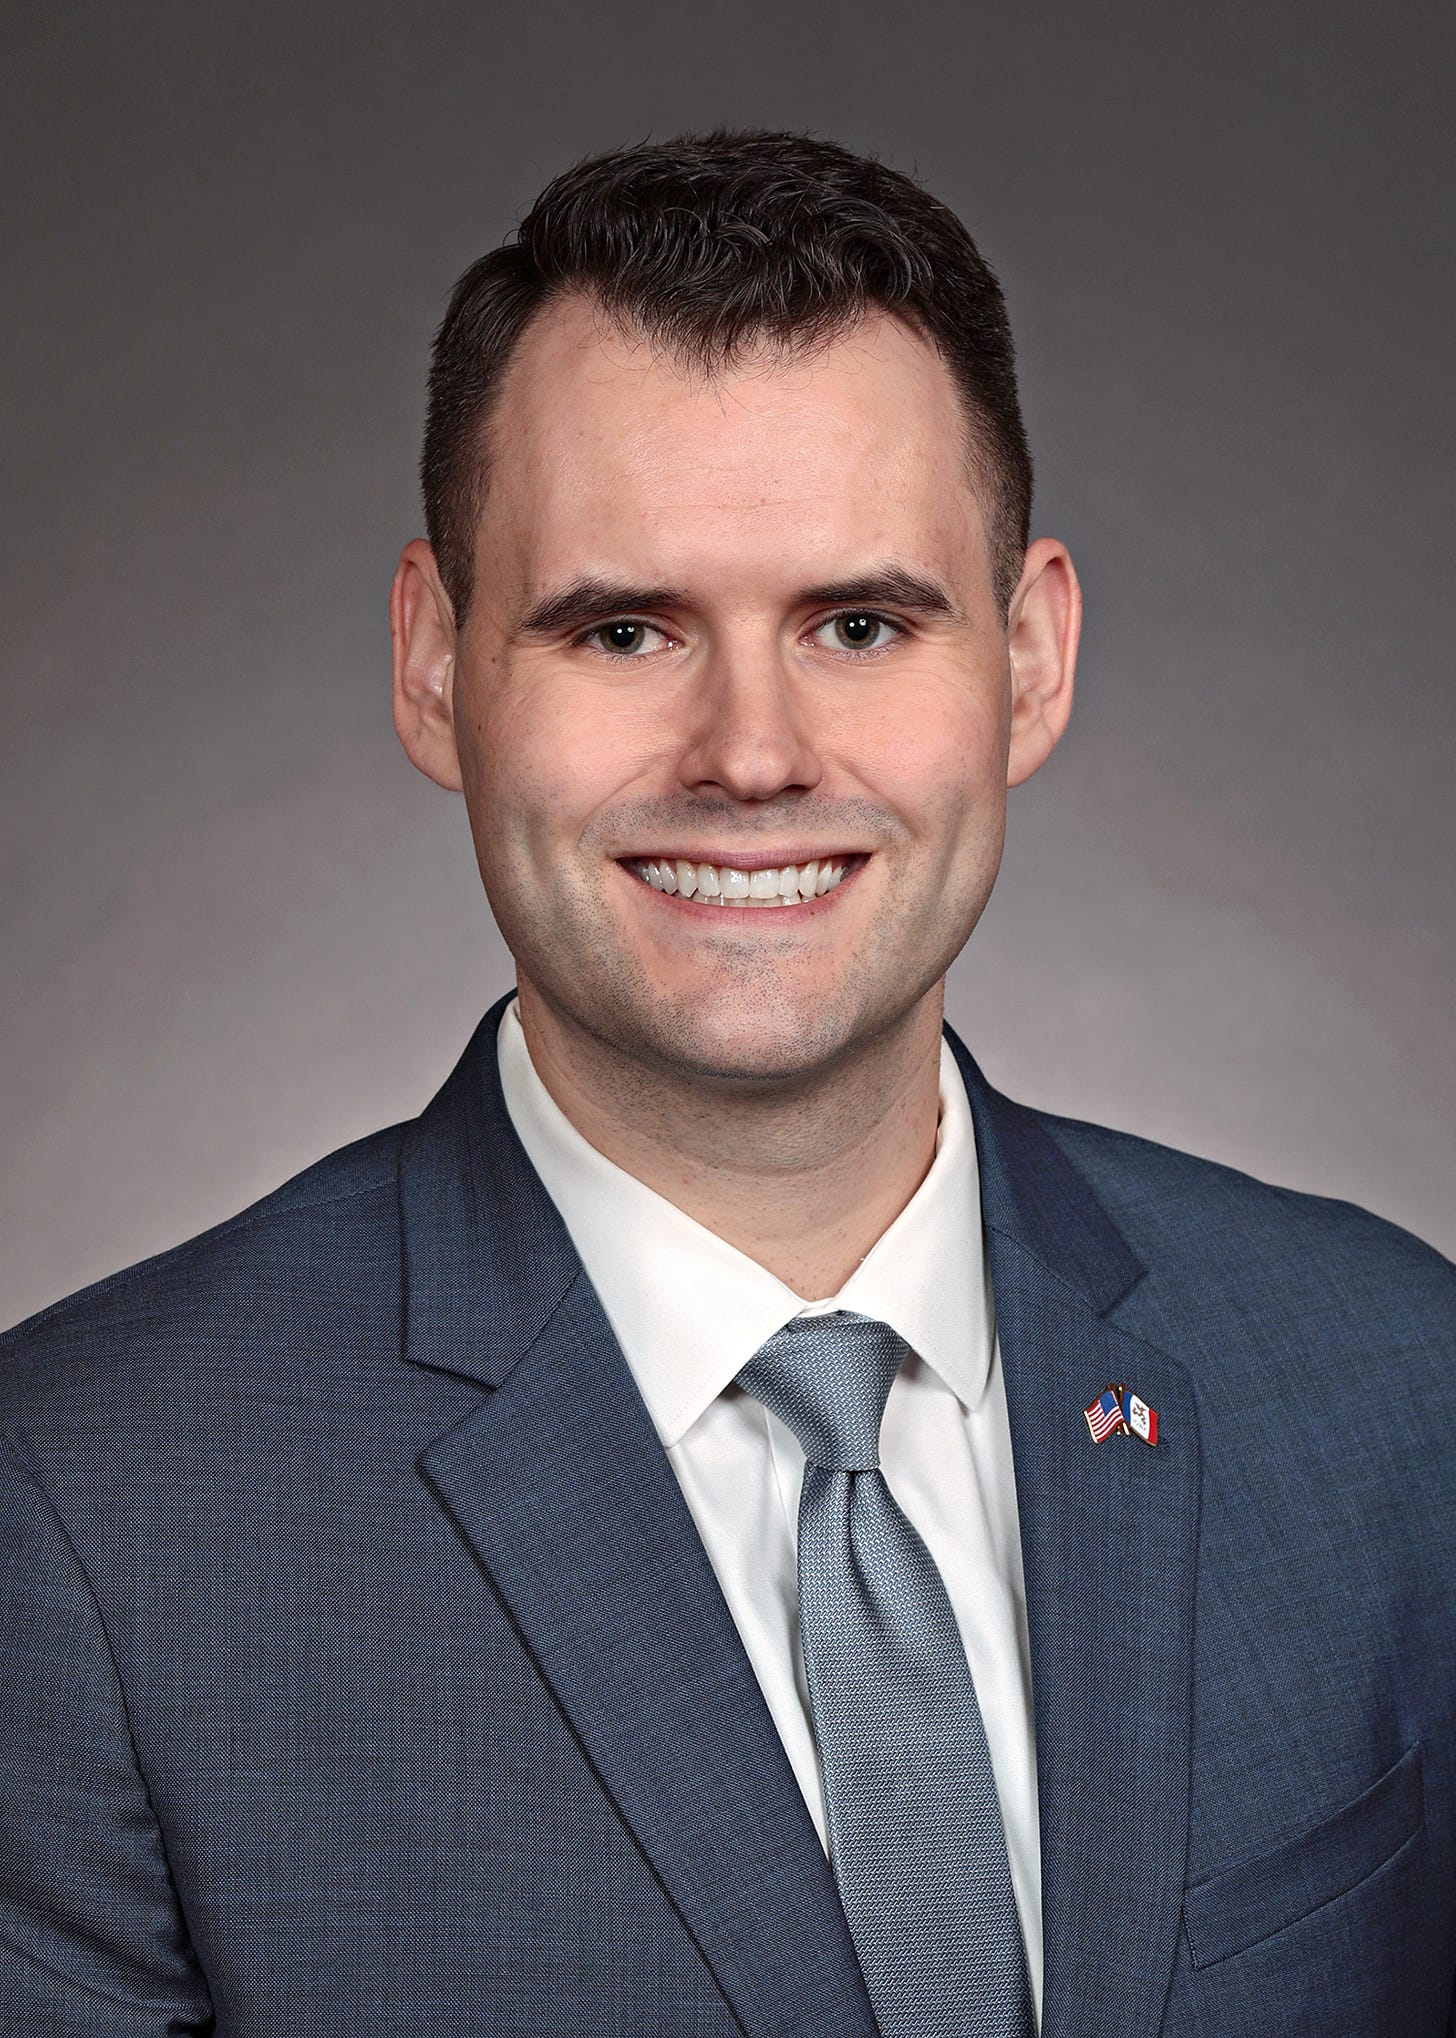 Iowa Sen. Zach Wahls – District 43